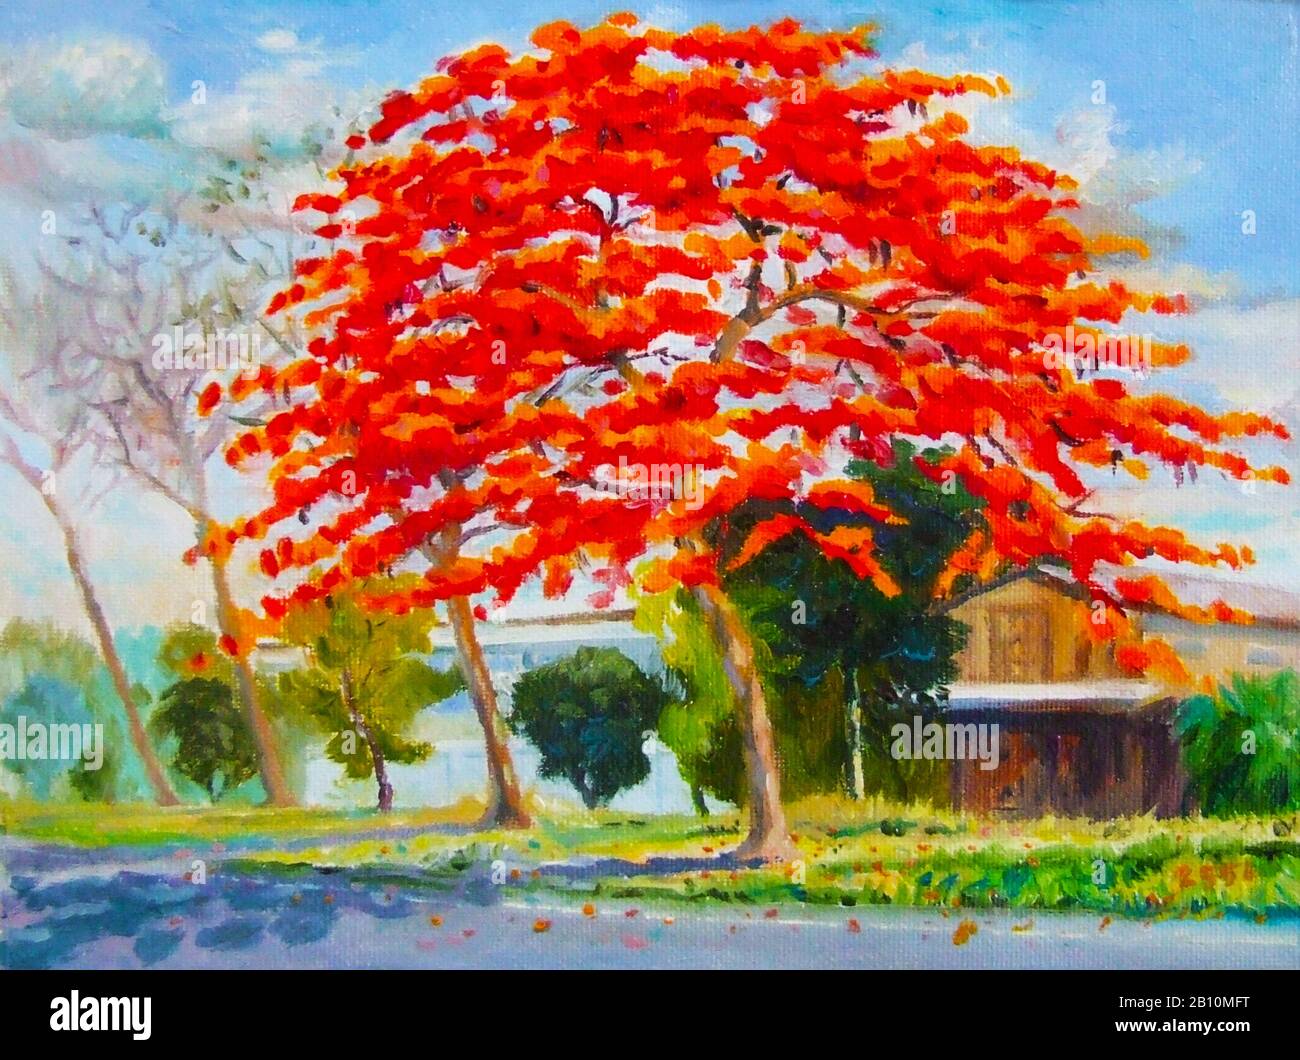 Peinture huile couleur paysage original coloré de paon arbre de fleurs et maison en bois avec nuage dans le fond du ciel Banque D'Images